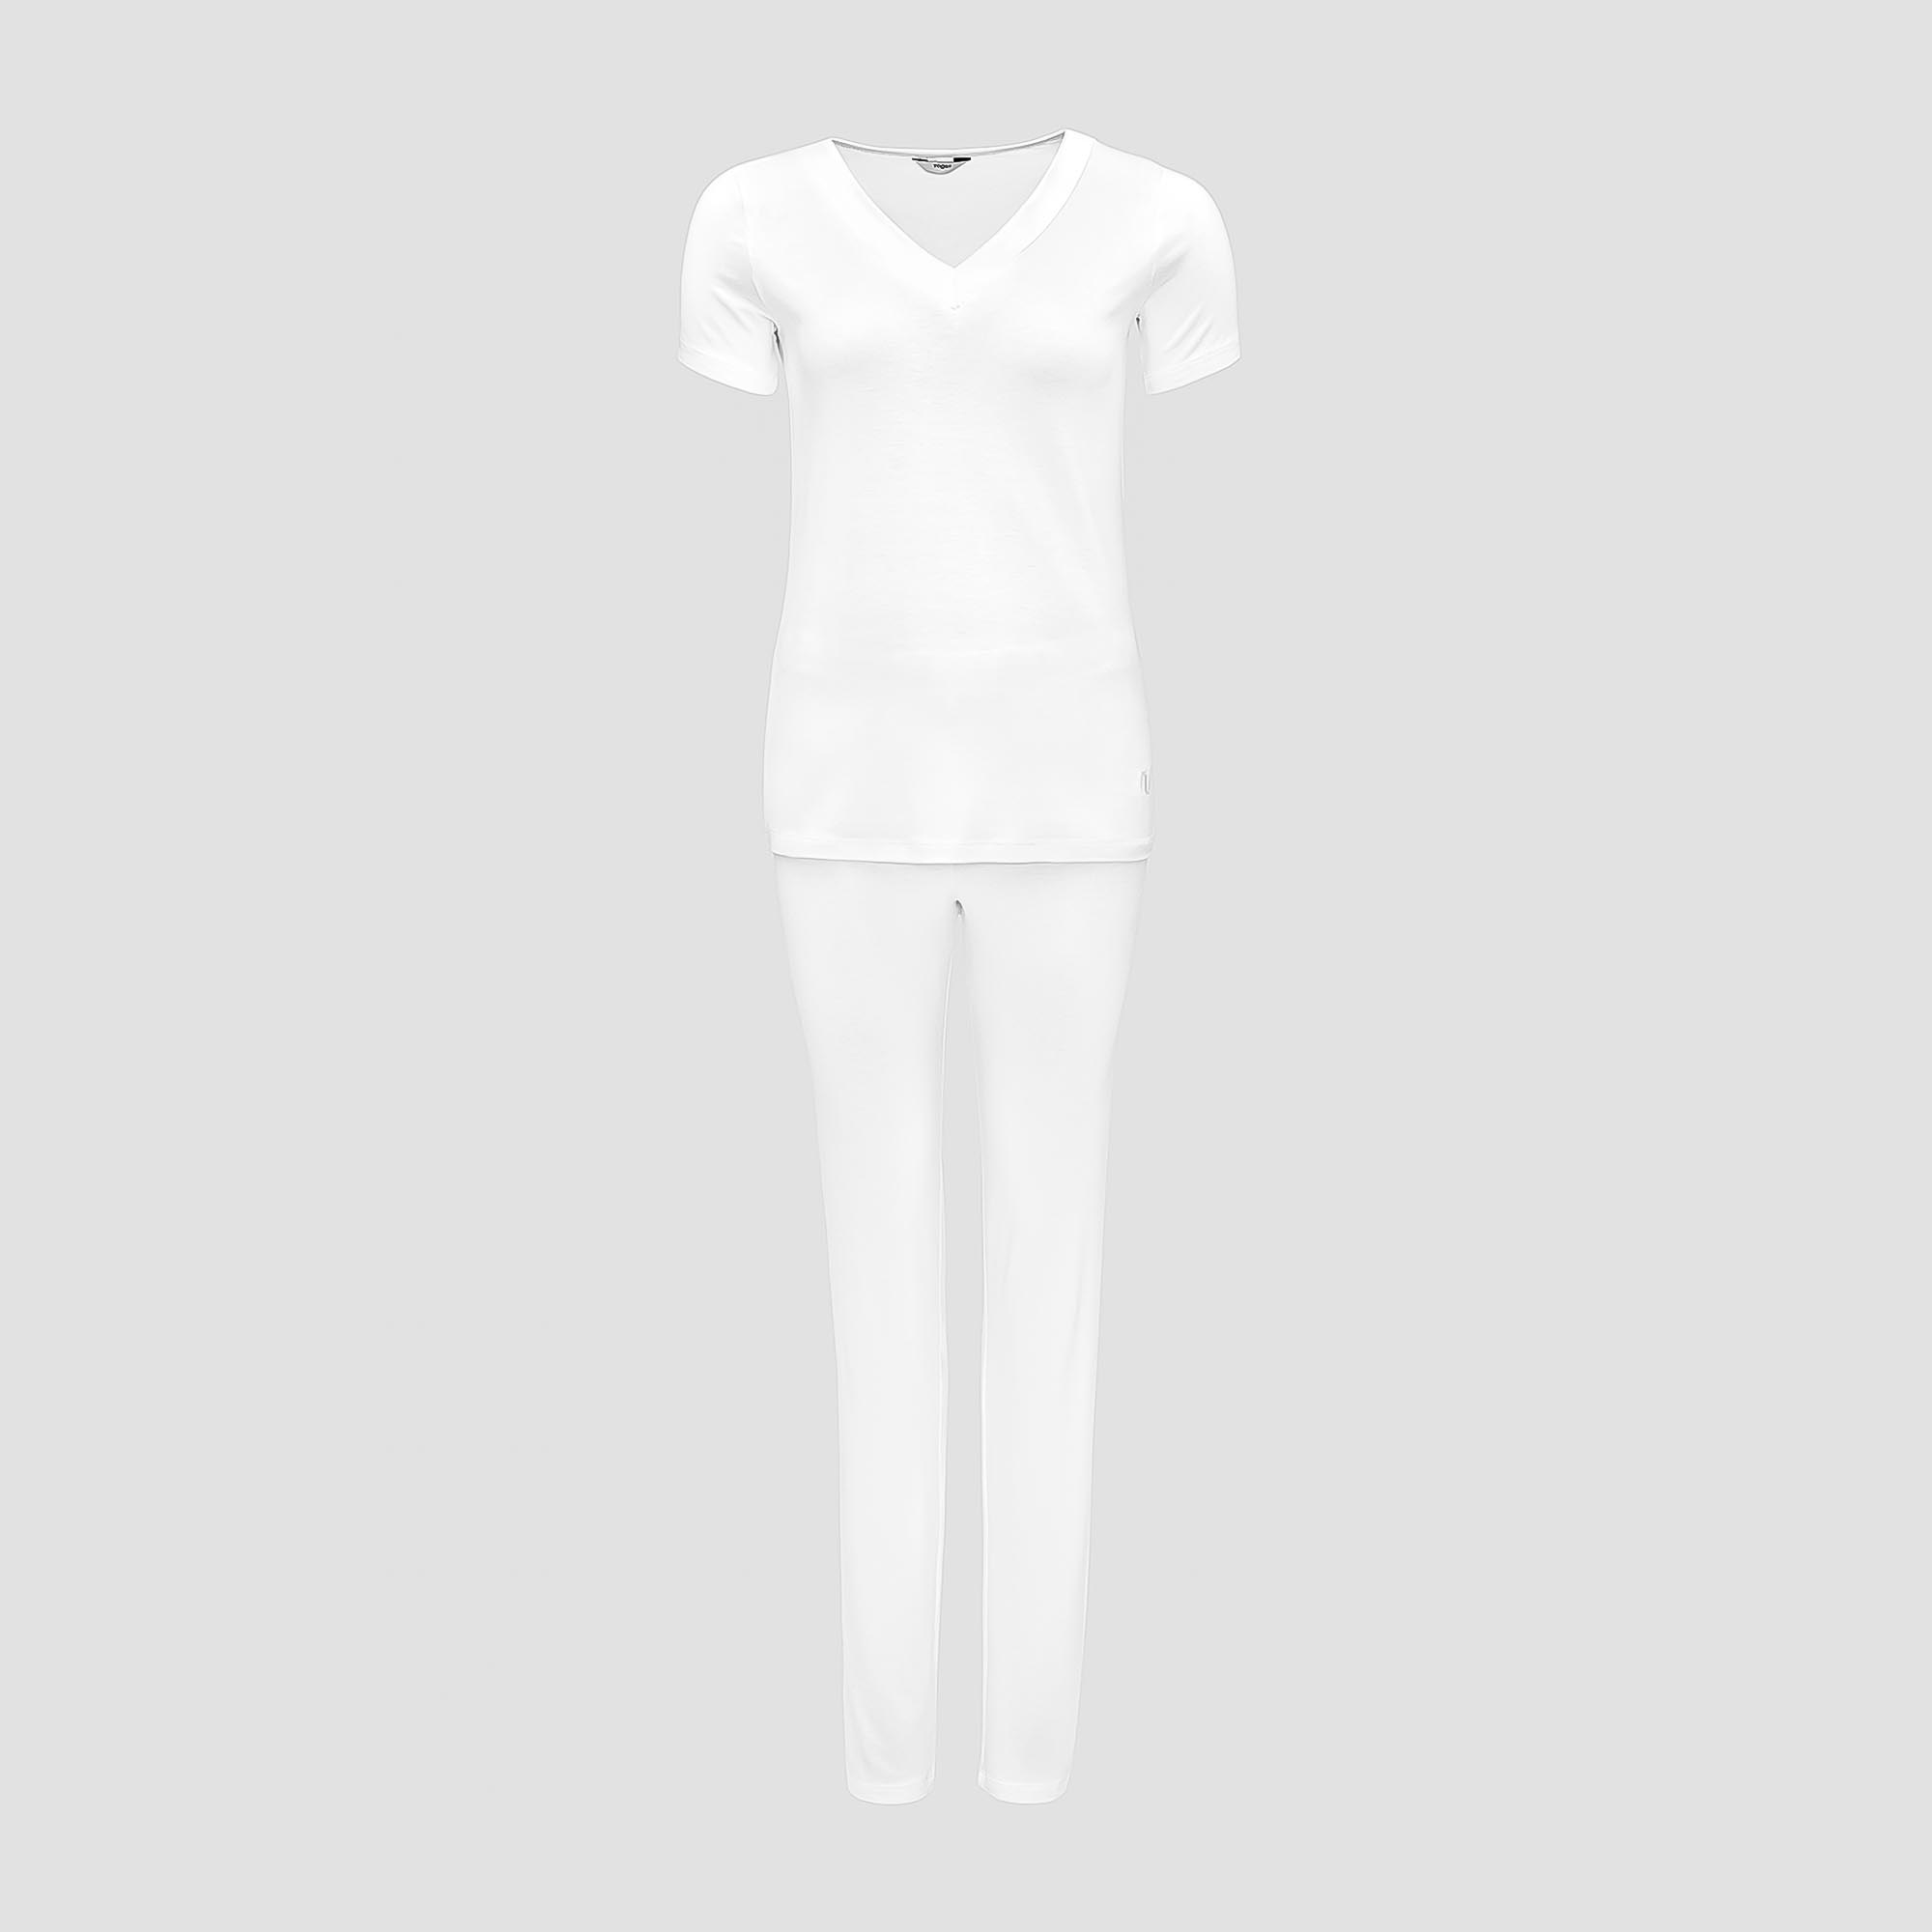 Пижама Togas Ингелла белая женская L(48) 2 предмета жен пижама с шортами инь янь белый р 50